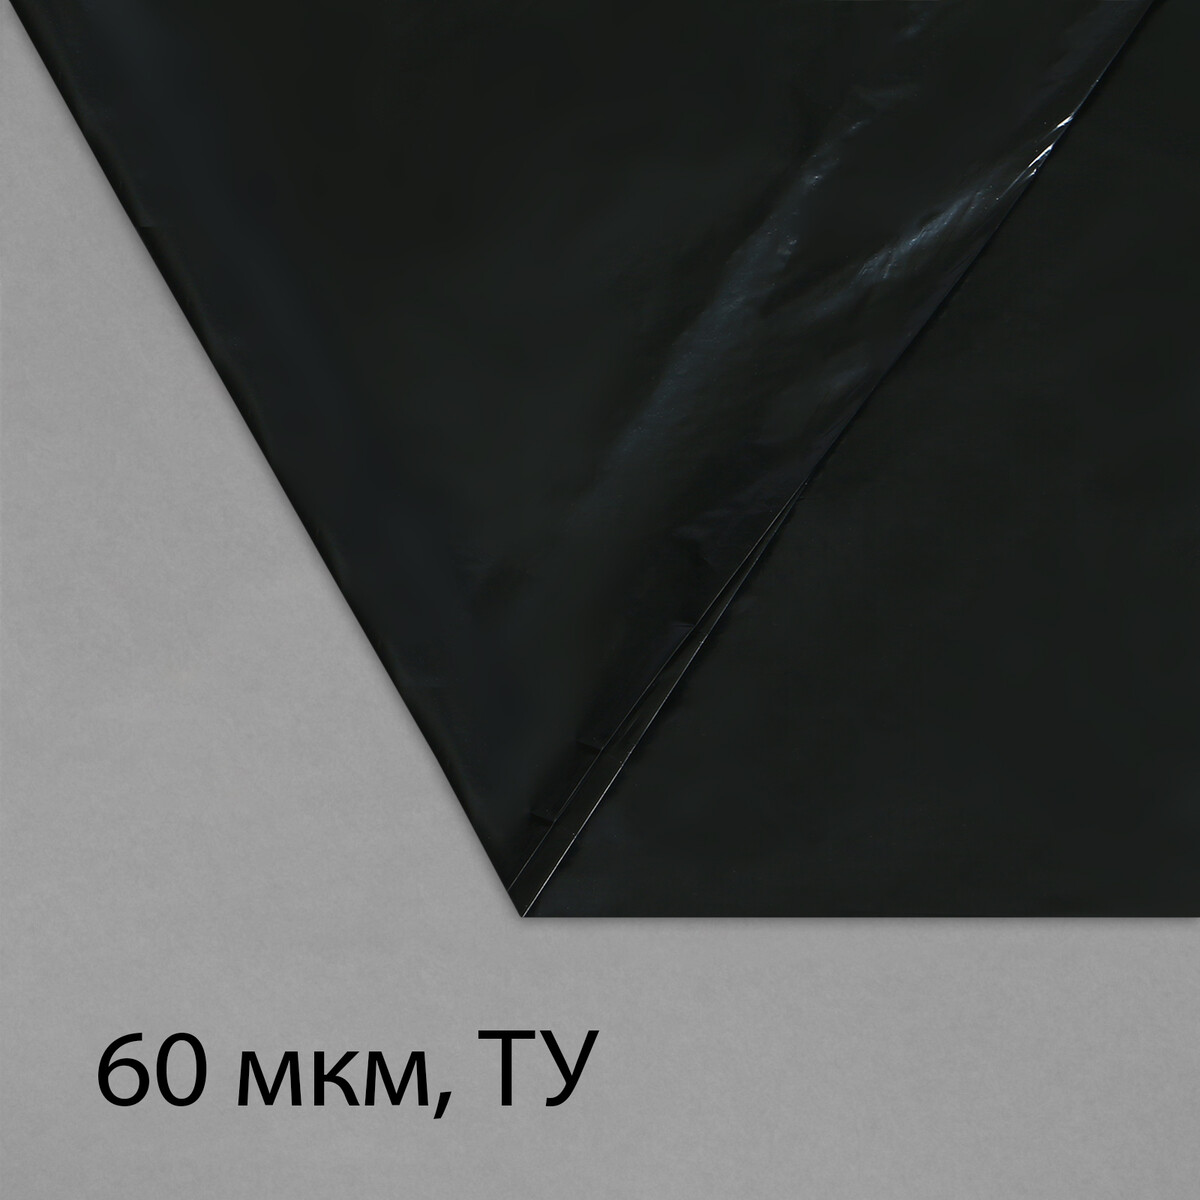 Пленка полиэтиленовая, техническая, толщина 60 мкм, 5 × 3 м, рукав (1,5 м × 2), черная, 2 сорт, эконом 50 % пленка полиэтиленовая техническая 80 мкм черная длина 10 м ширина 3 м рукав 1 5 × 2 м эконом 50%